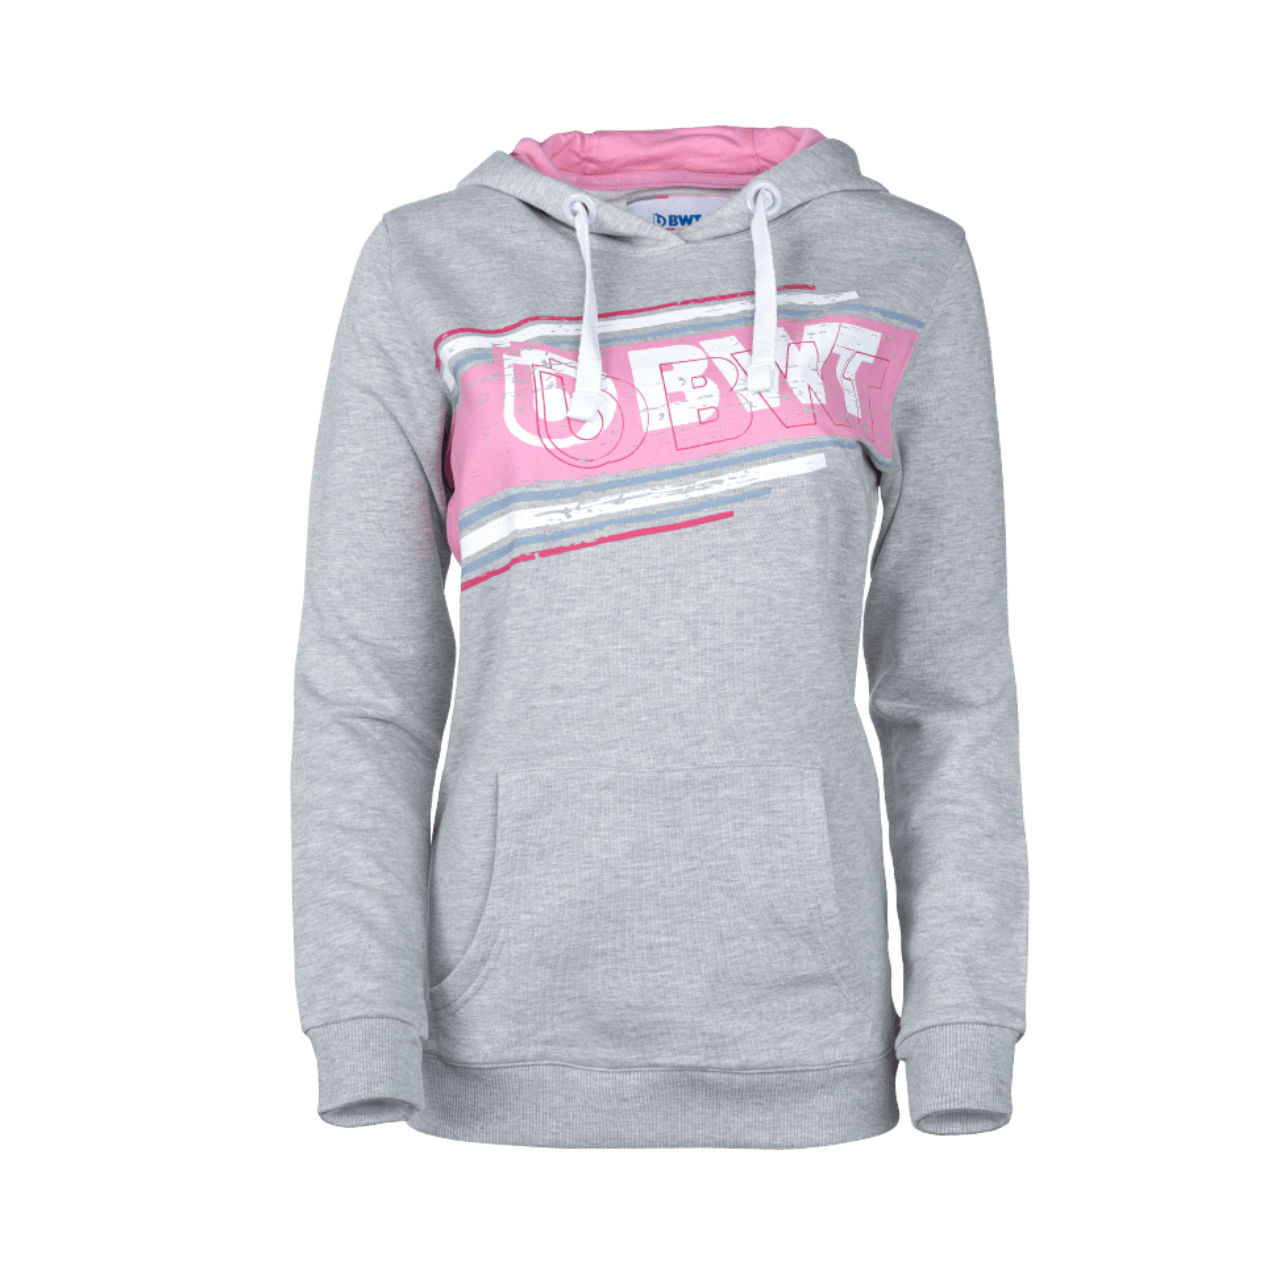 BWT Lifestyle Hoodie Dames in grijs met wit BWT-logo op roze achtergrond